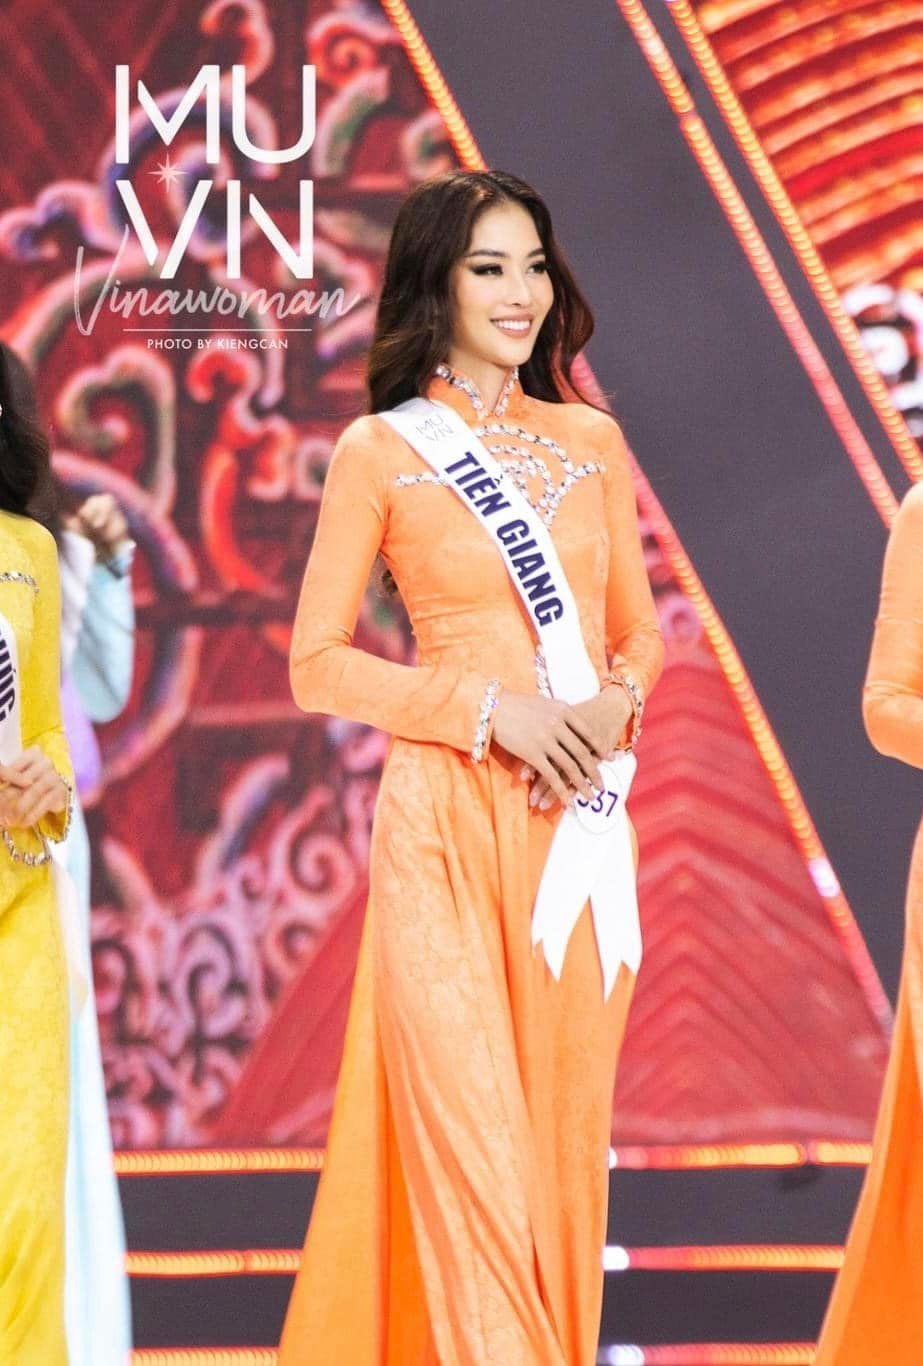  
Lệ Nam đã dành hai giải giải phụ là Best Face và Người đẹp Bản lĩnh – Đại sứ vì cộng đồng trong cuộc thi Hoa hậu Hoàn vũ Việt Nam 2022.(Ảnh: FB Nguyễn Lệ Nam) - Tin sao Viet - Tin tuc sao Viet - Scandal sao Viet - Tin tuc cua Sao - Tin cua Sao